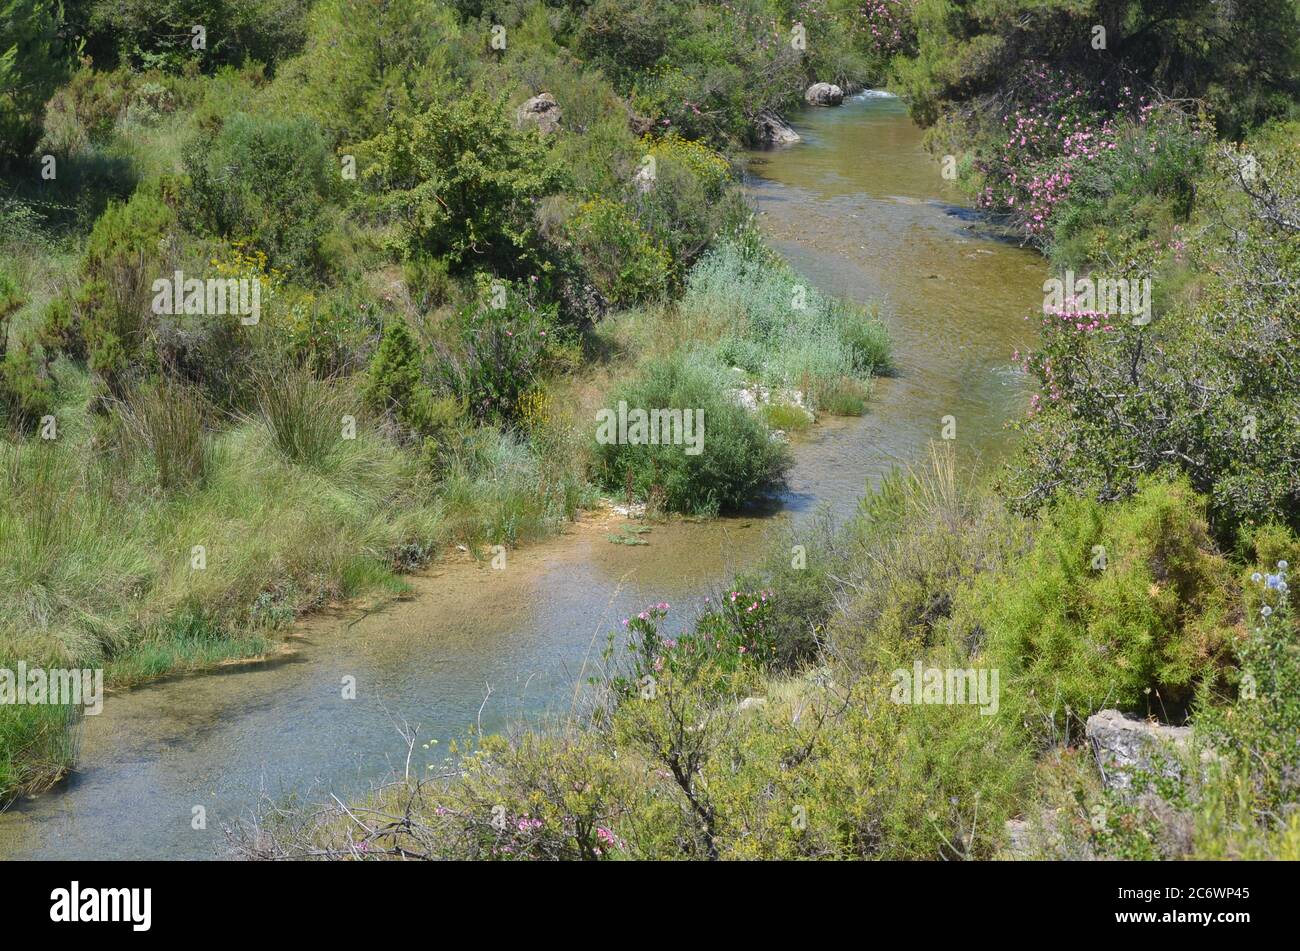 El río Palancia, un ejemplo del río de montaña mediterráneo en la región de Valencia, al este de España Foto de stock